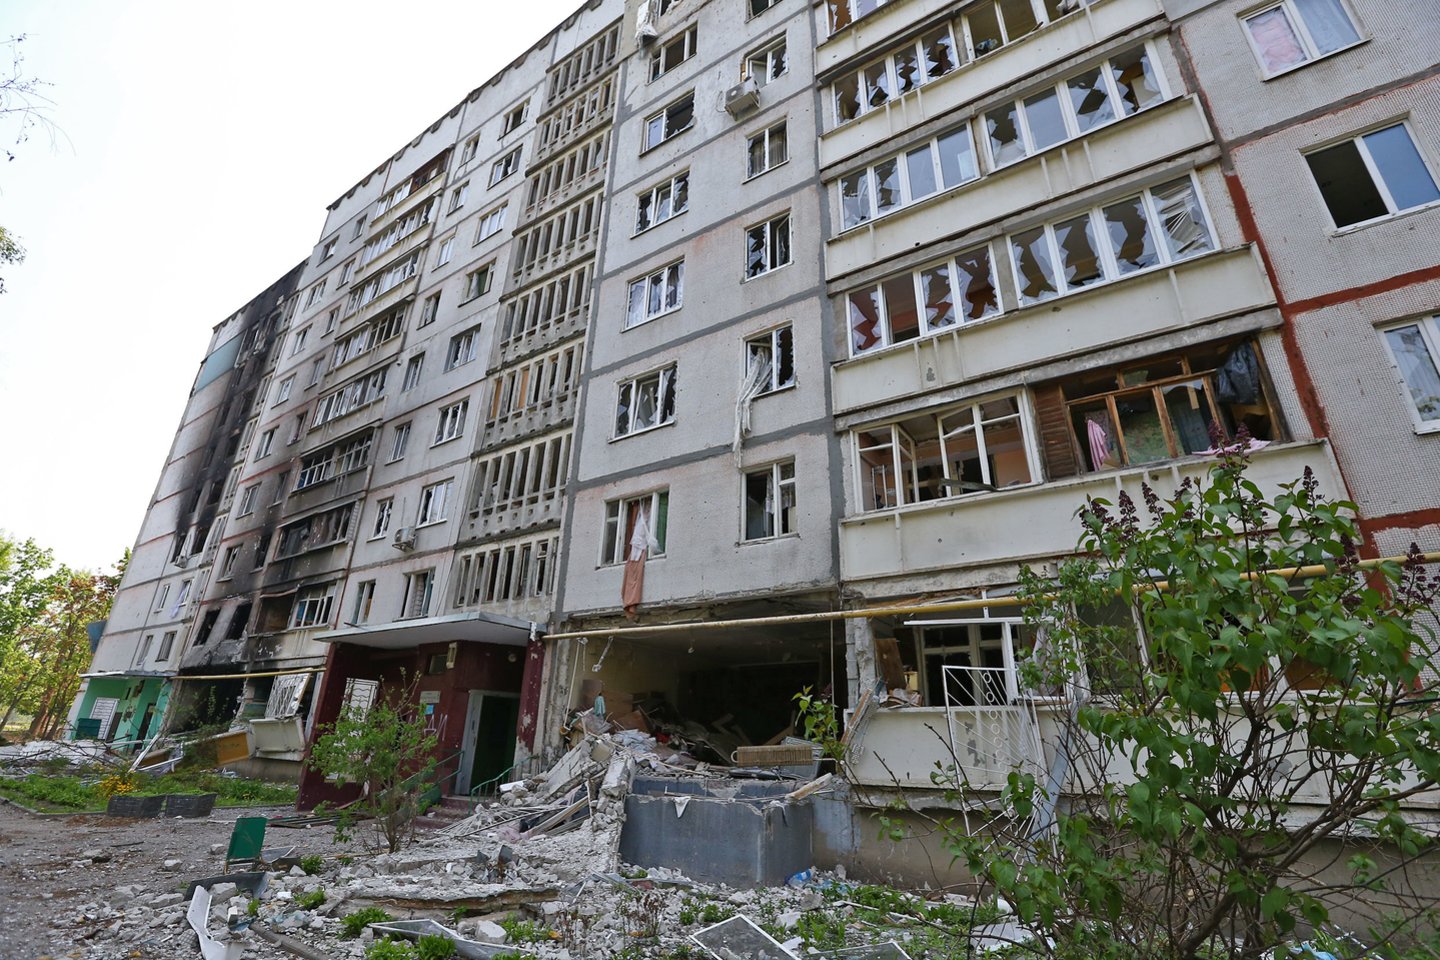  Karas Ukrainoje. 74 paras bombarduotoje Šiaurinėje Saltovkoje neliko sveiko nė vieno daugiabučio. <br> G.Šiupario nuotr.